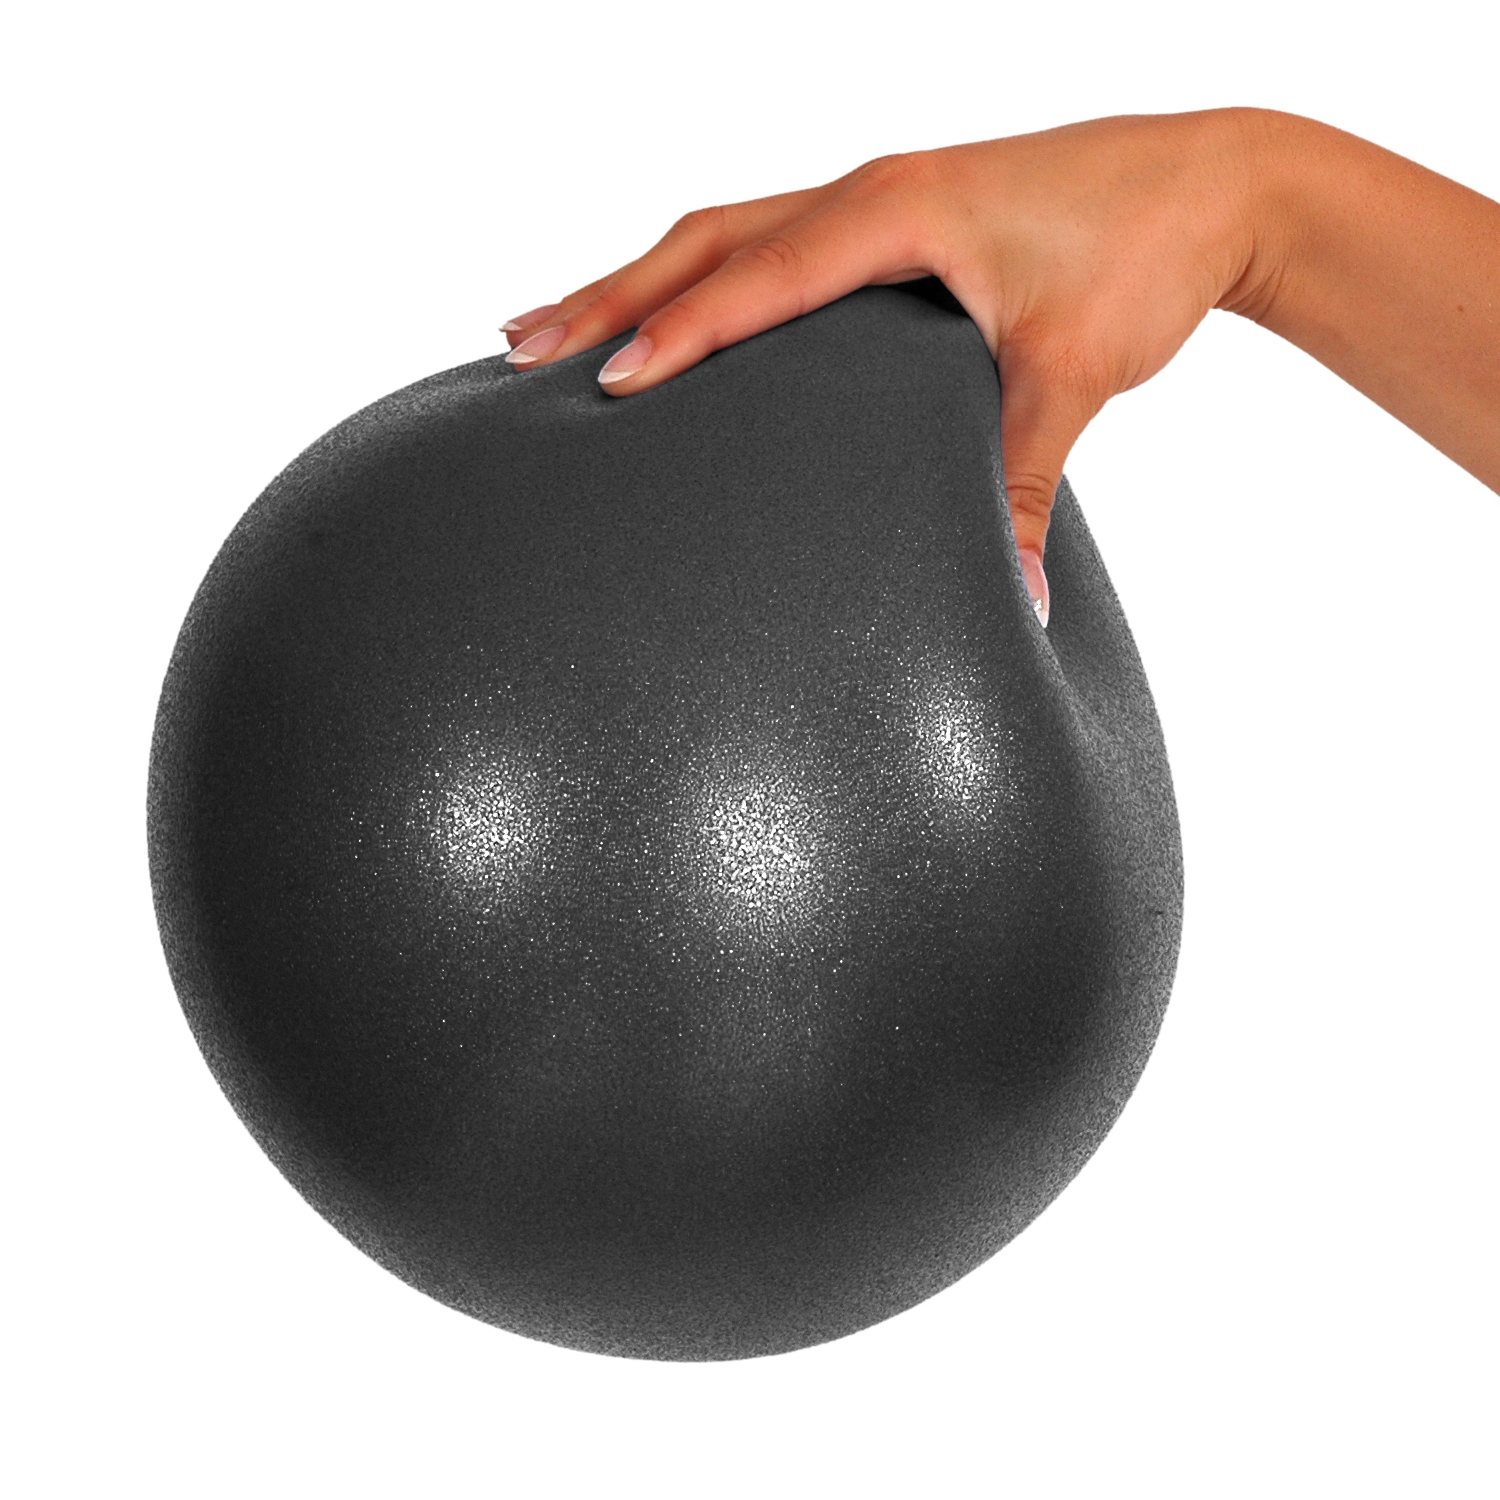 Ball d'exercice - Mambo - doux - diam. 26 cm - noir